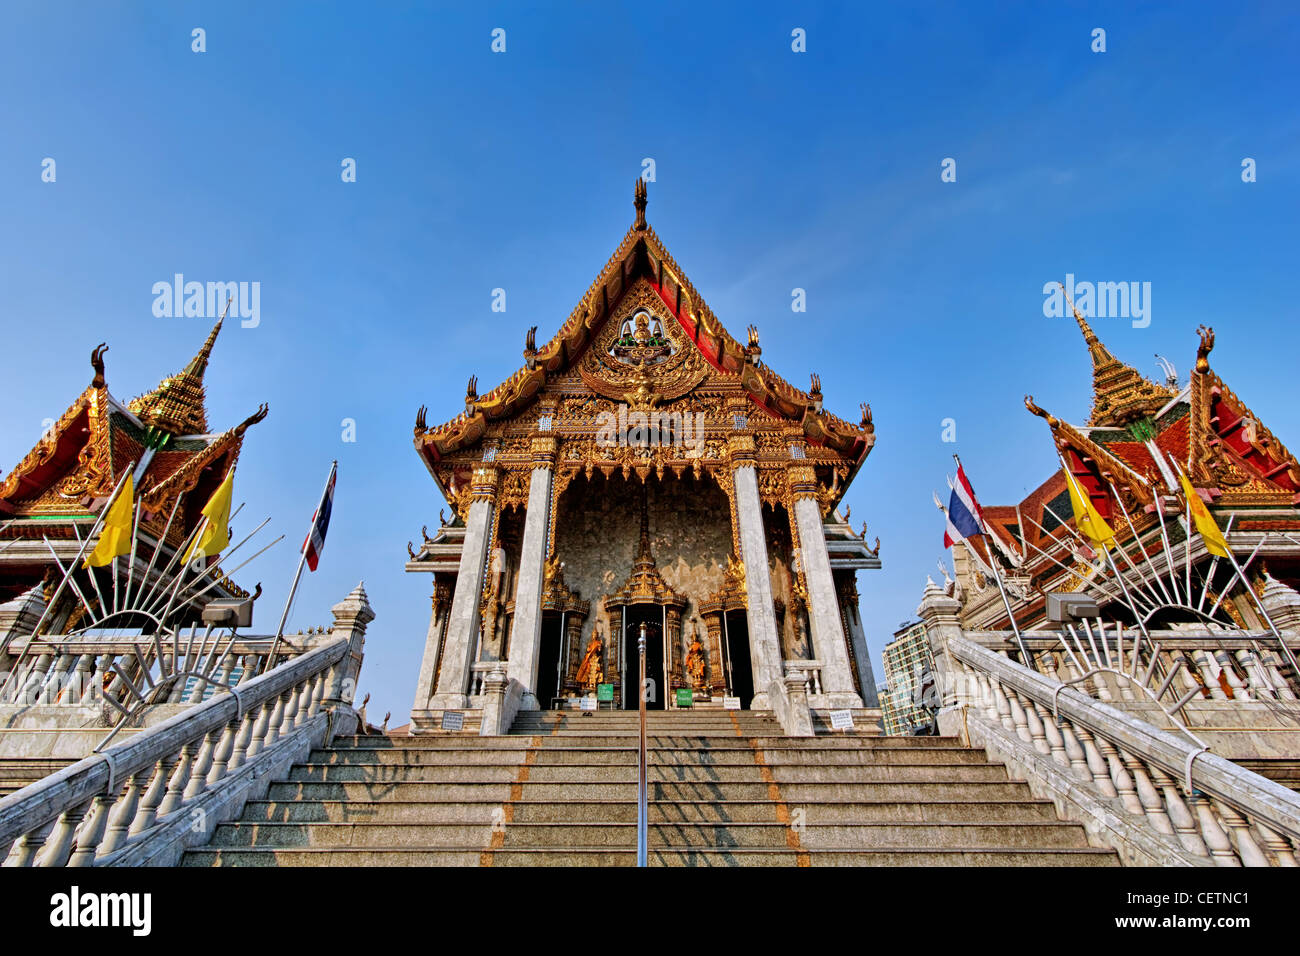 Wat Hua Lamphong located in Sam Yan, Bangkok Stock Photo